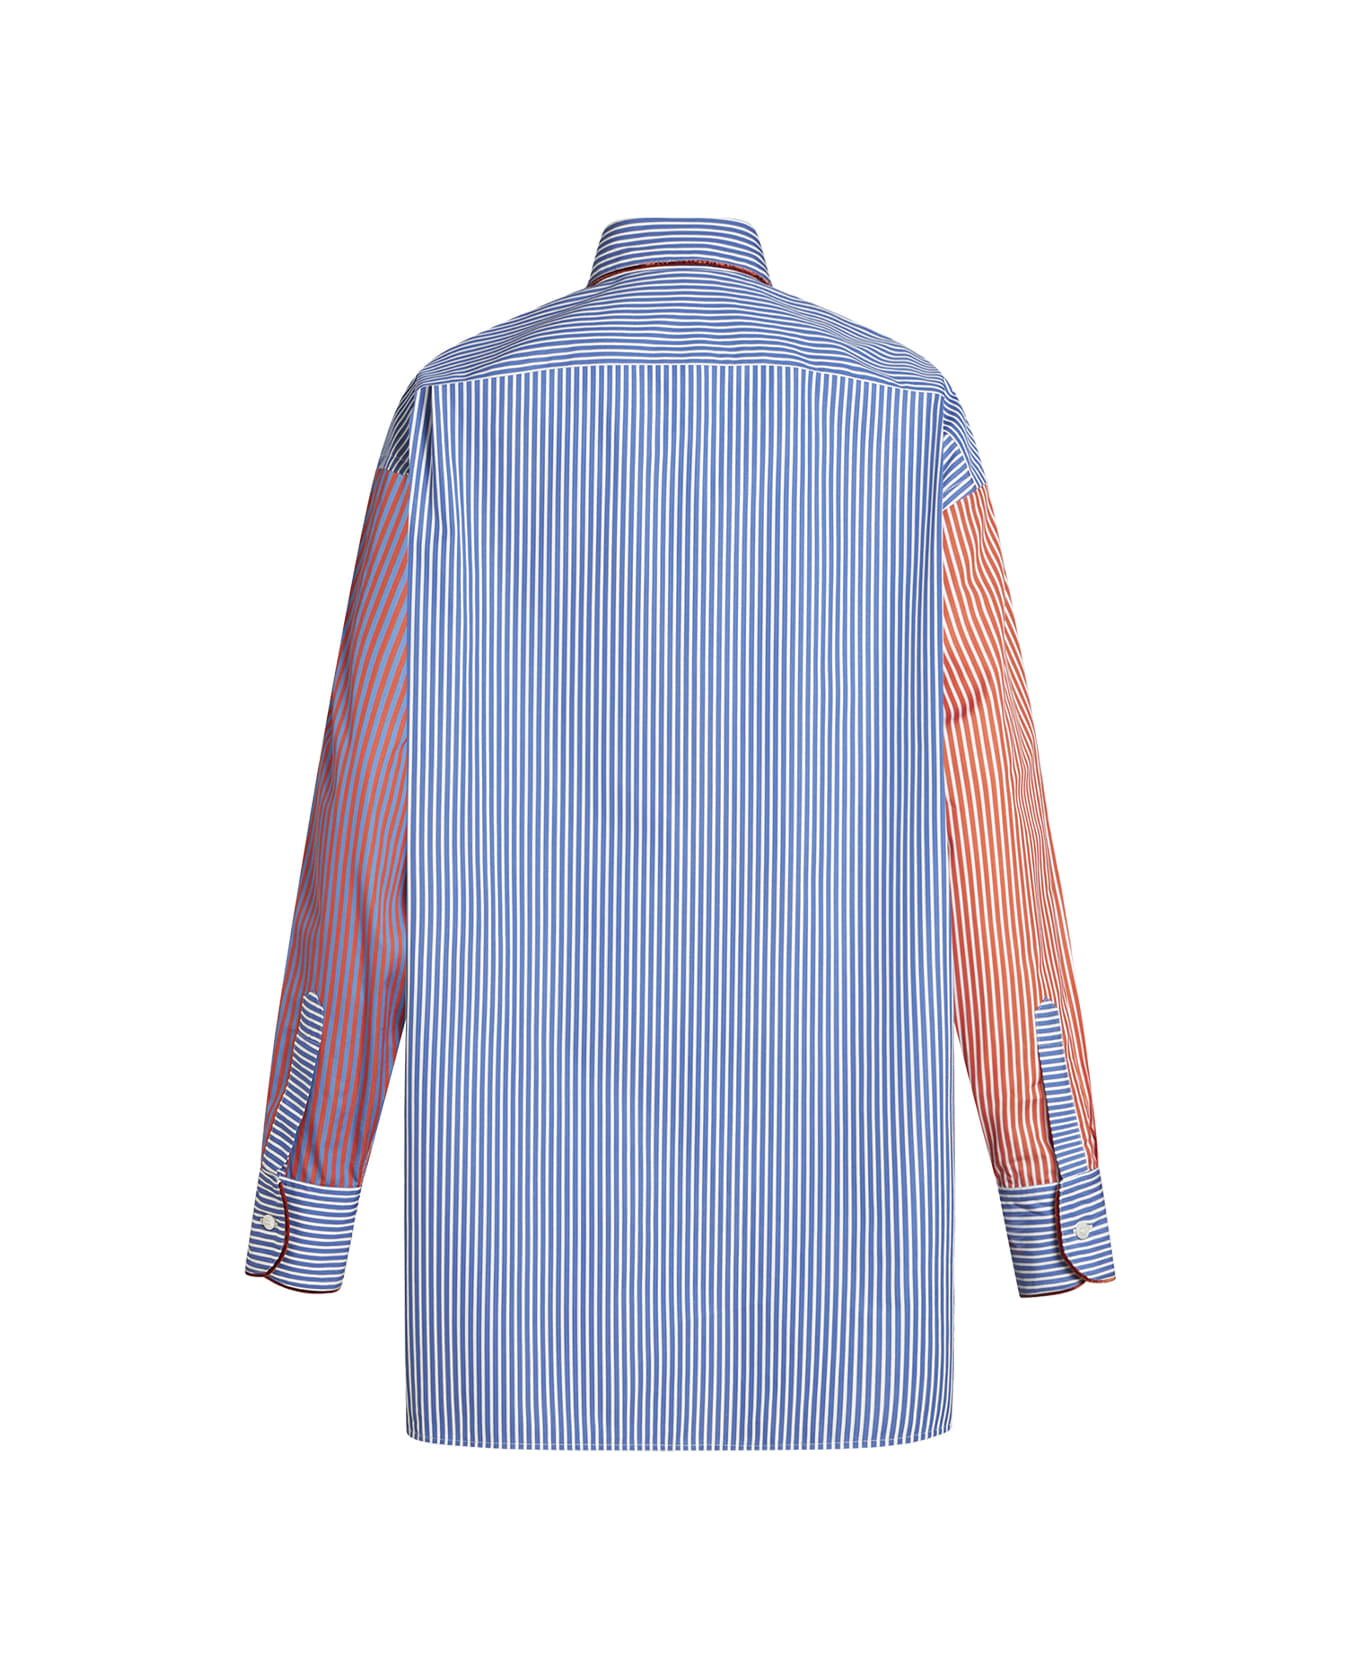 Etro Multicolored Striped Cotton Shirt - Multicolour